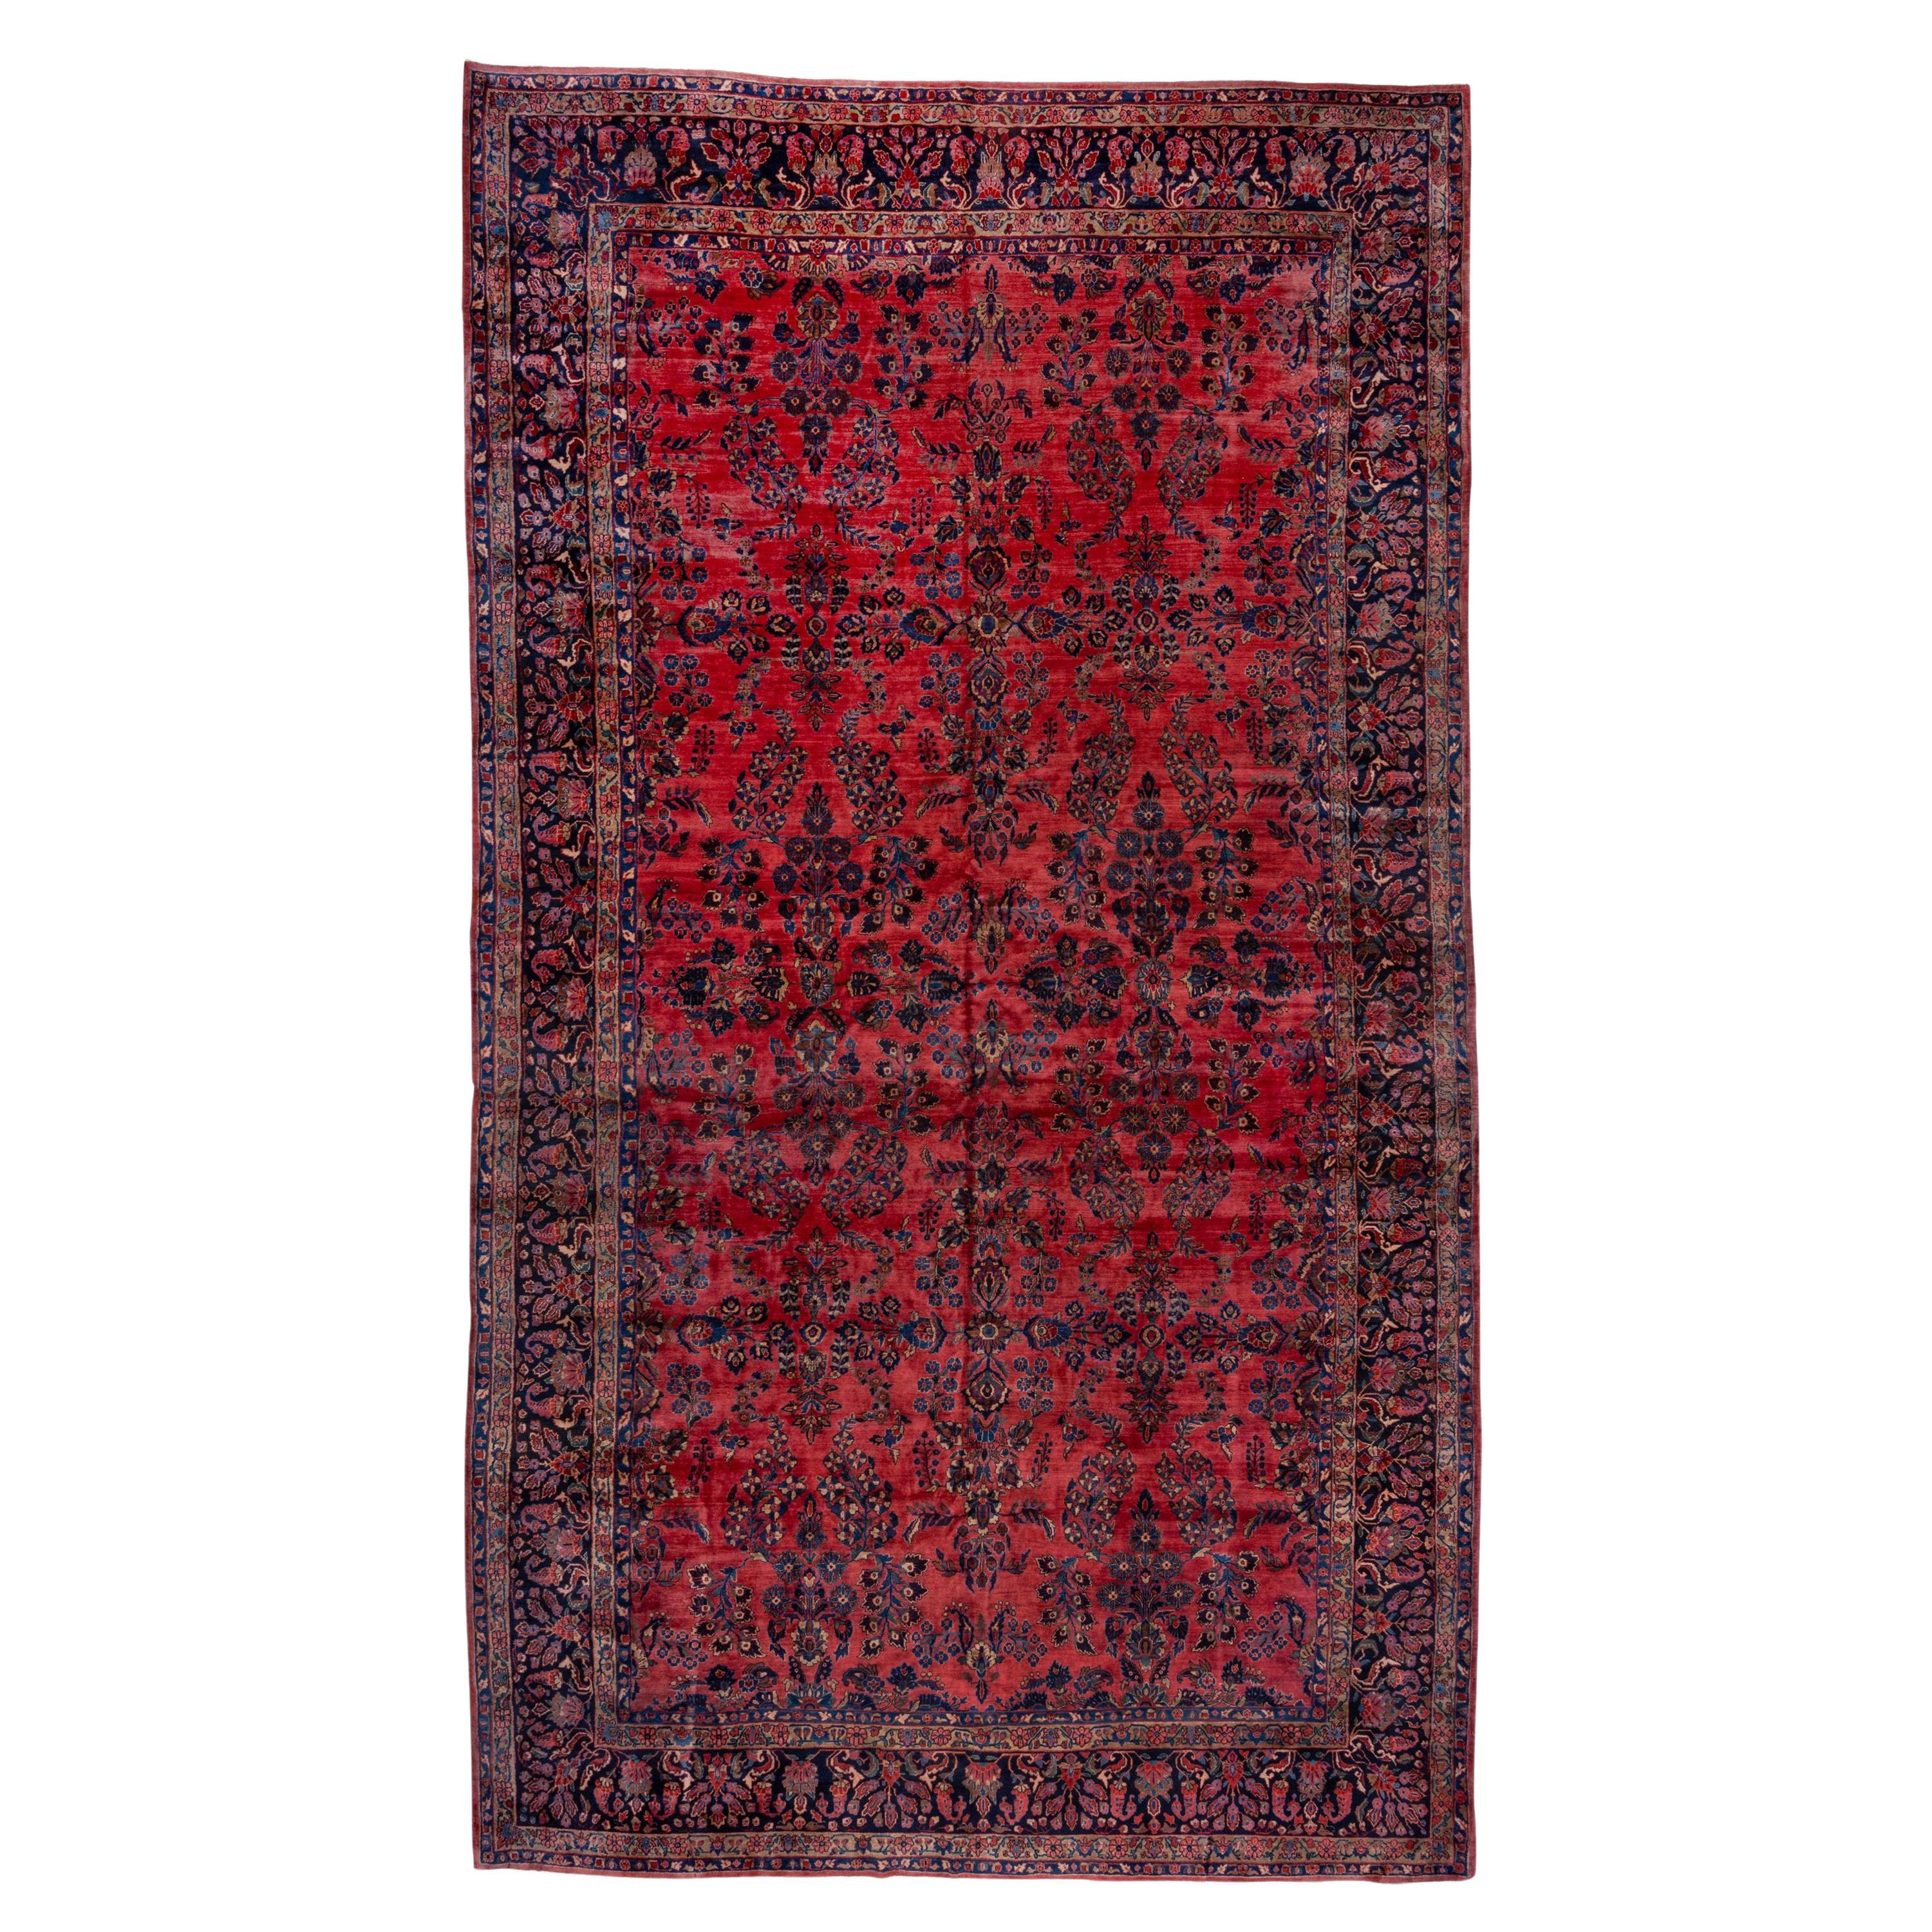 Antique Red Sarouk Carpet, Excellent Condition